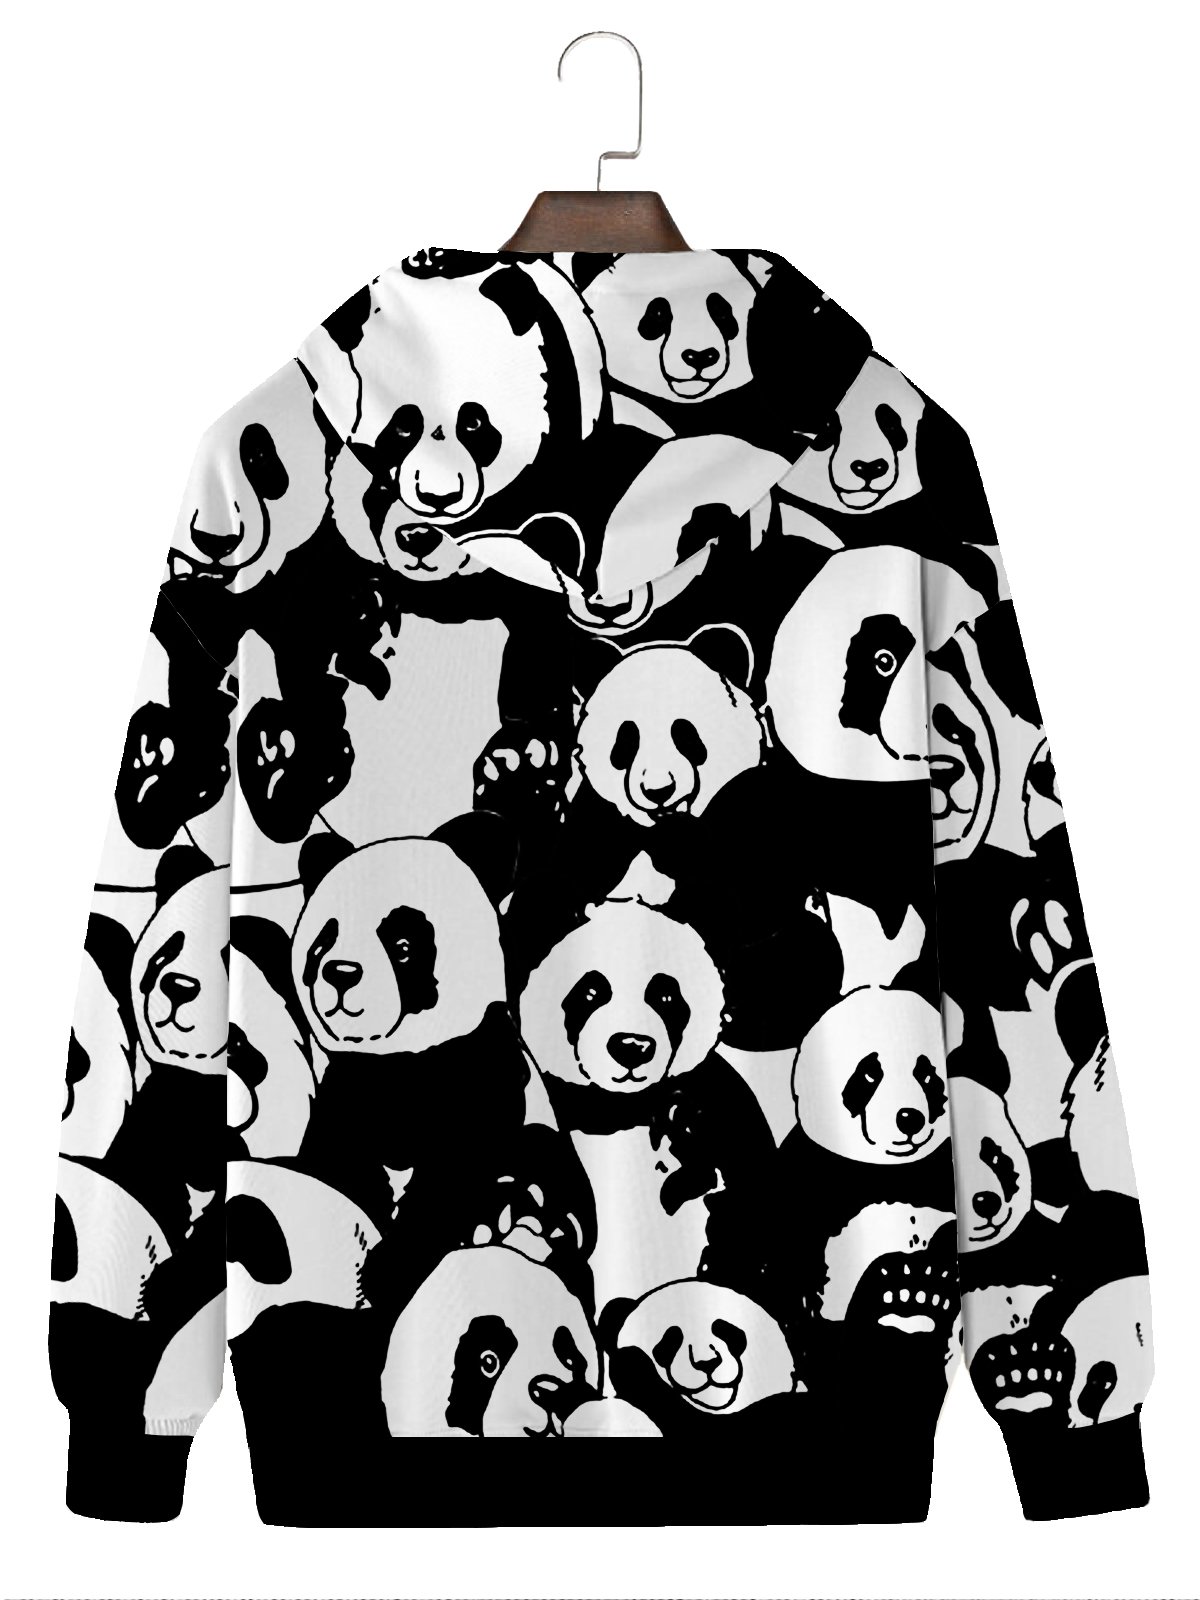 Royaura Fun Animal Men's Black Hoodies Panda Cartoon Plus Size Knit Pullover Sweatshirts